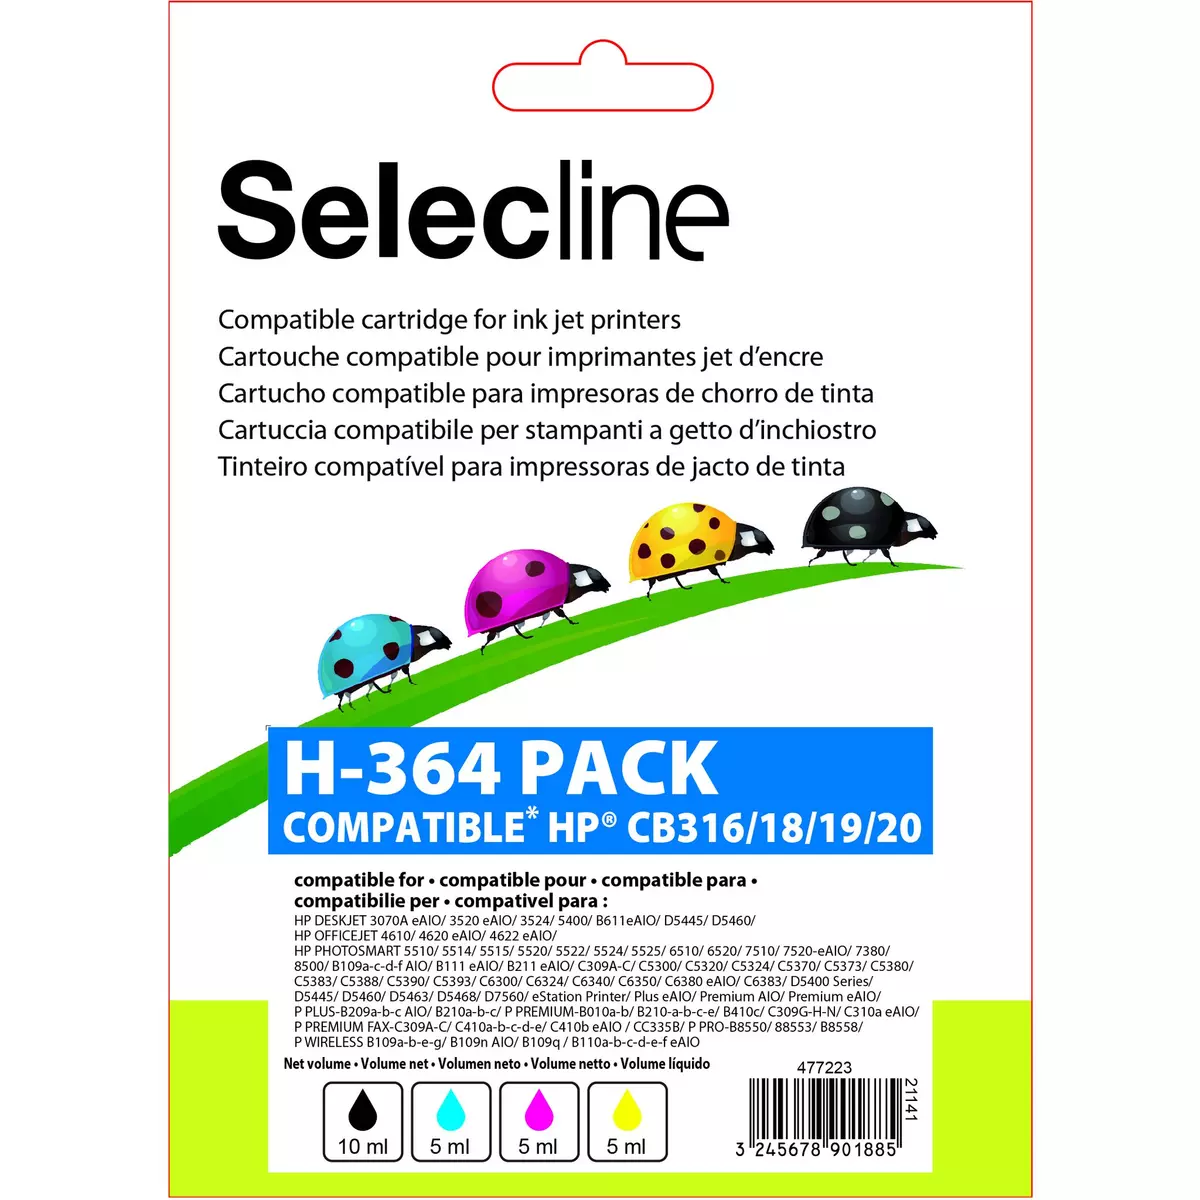 SELECLINE Cartouche 4 Couleurs H-364 PACK